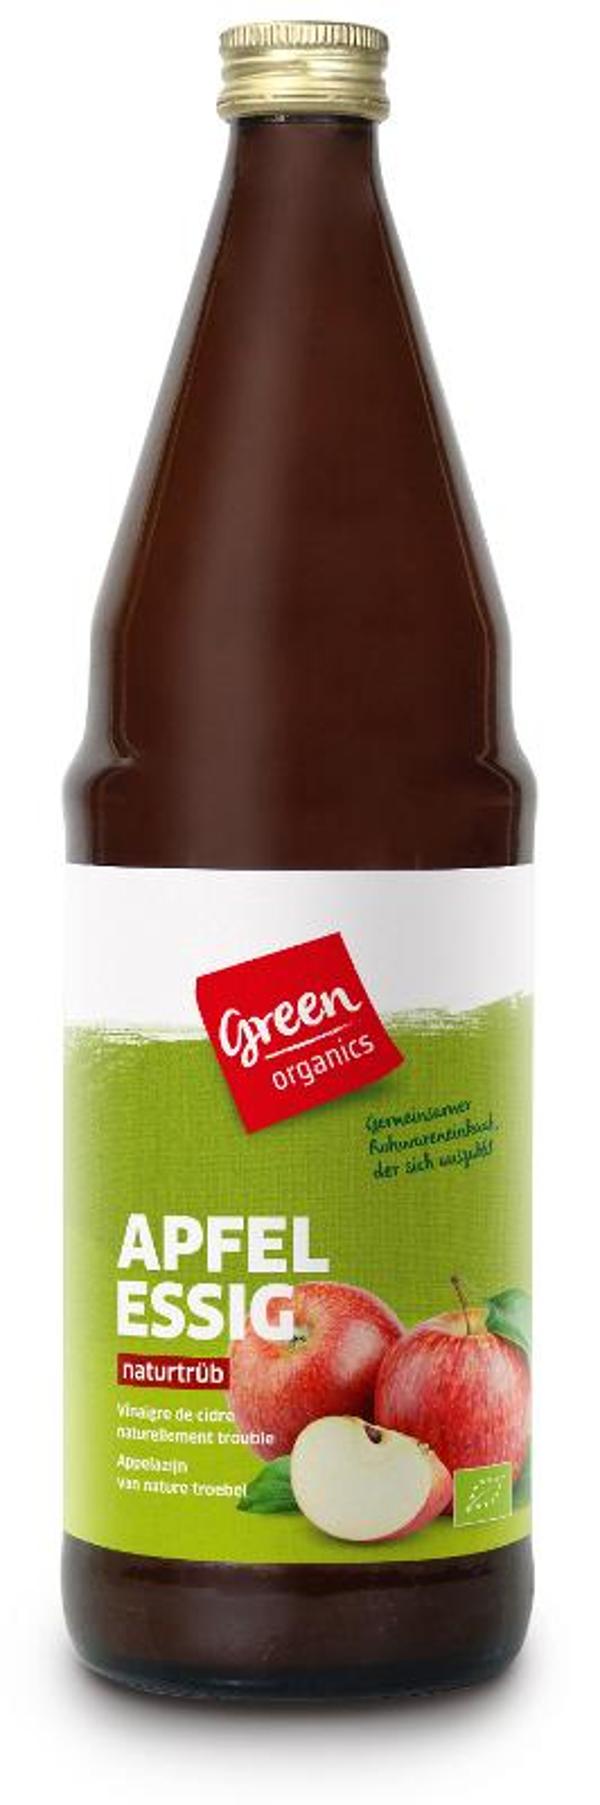 Produktfoto zu green Apfelessig